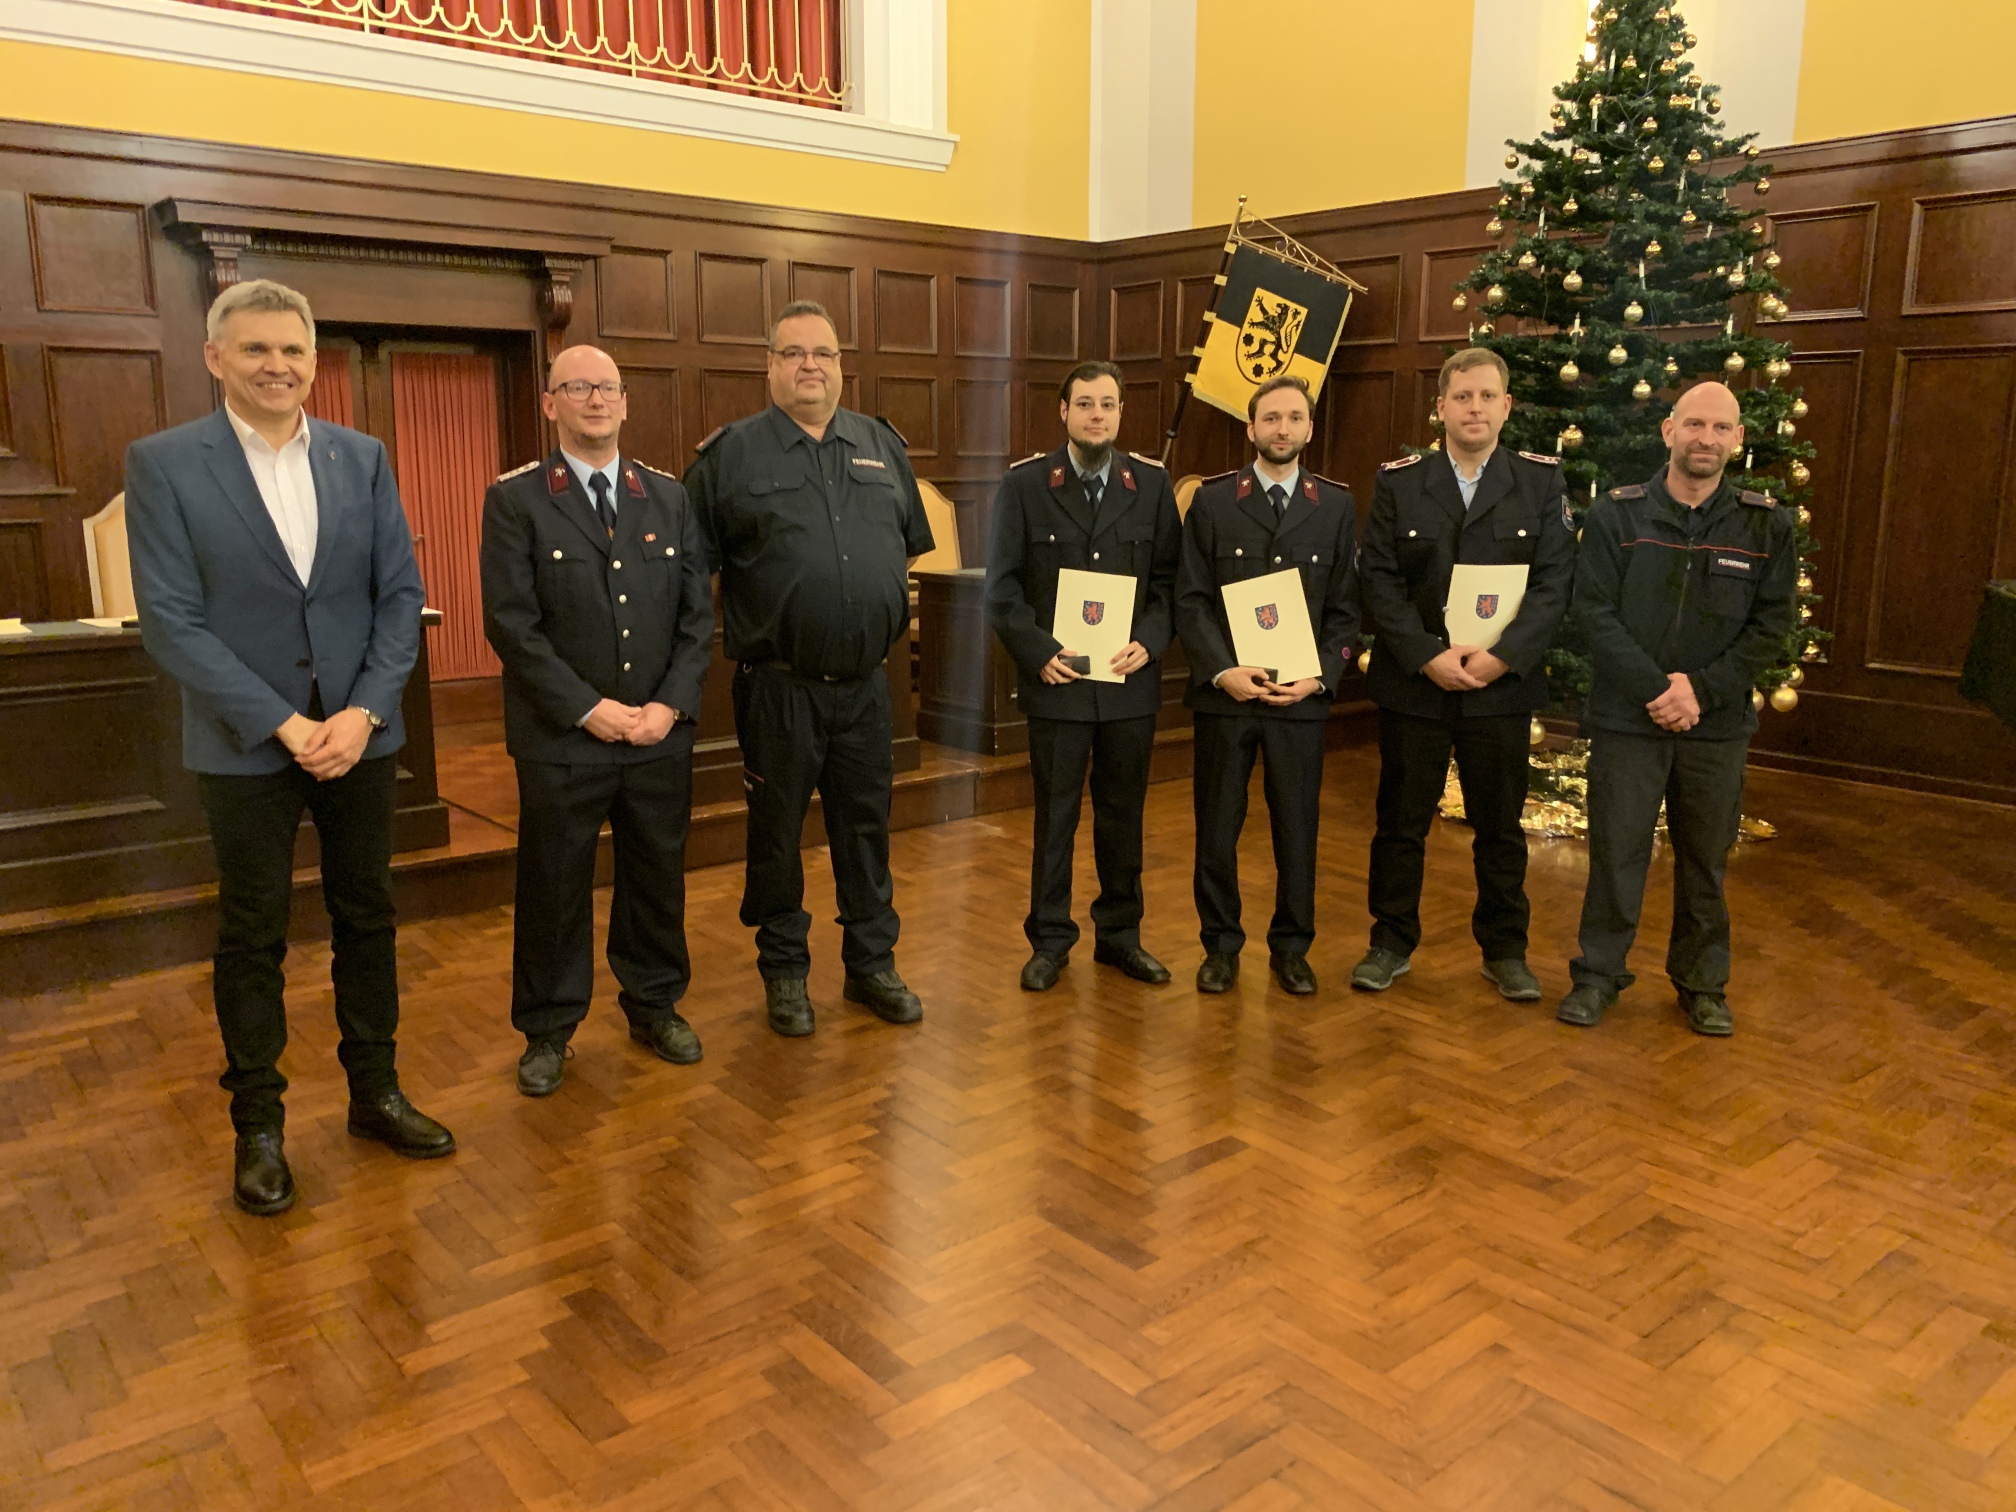 Sechs Männer in Feuerwehr-Uniform stehen in einer Reihe nebeneinander. Drei von ihnen halten eine Urkunde und eine Auszeichnung in den Händen. Links daneben steht der Bürgermeister Dr. Voigt.